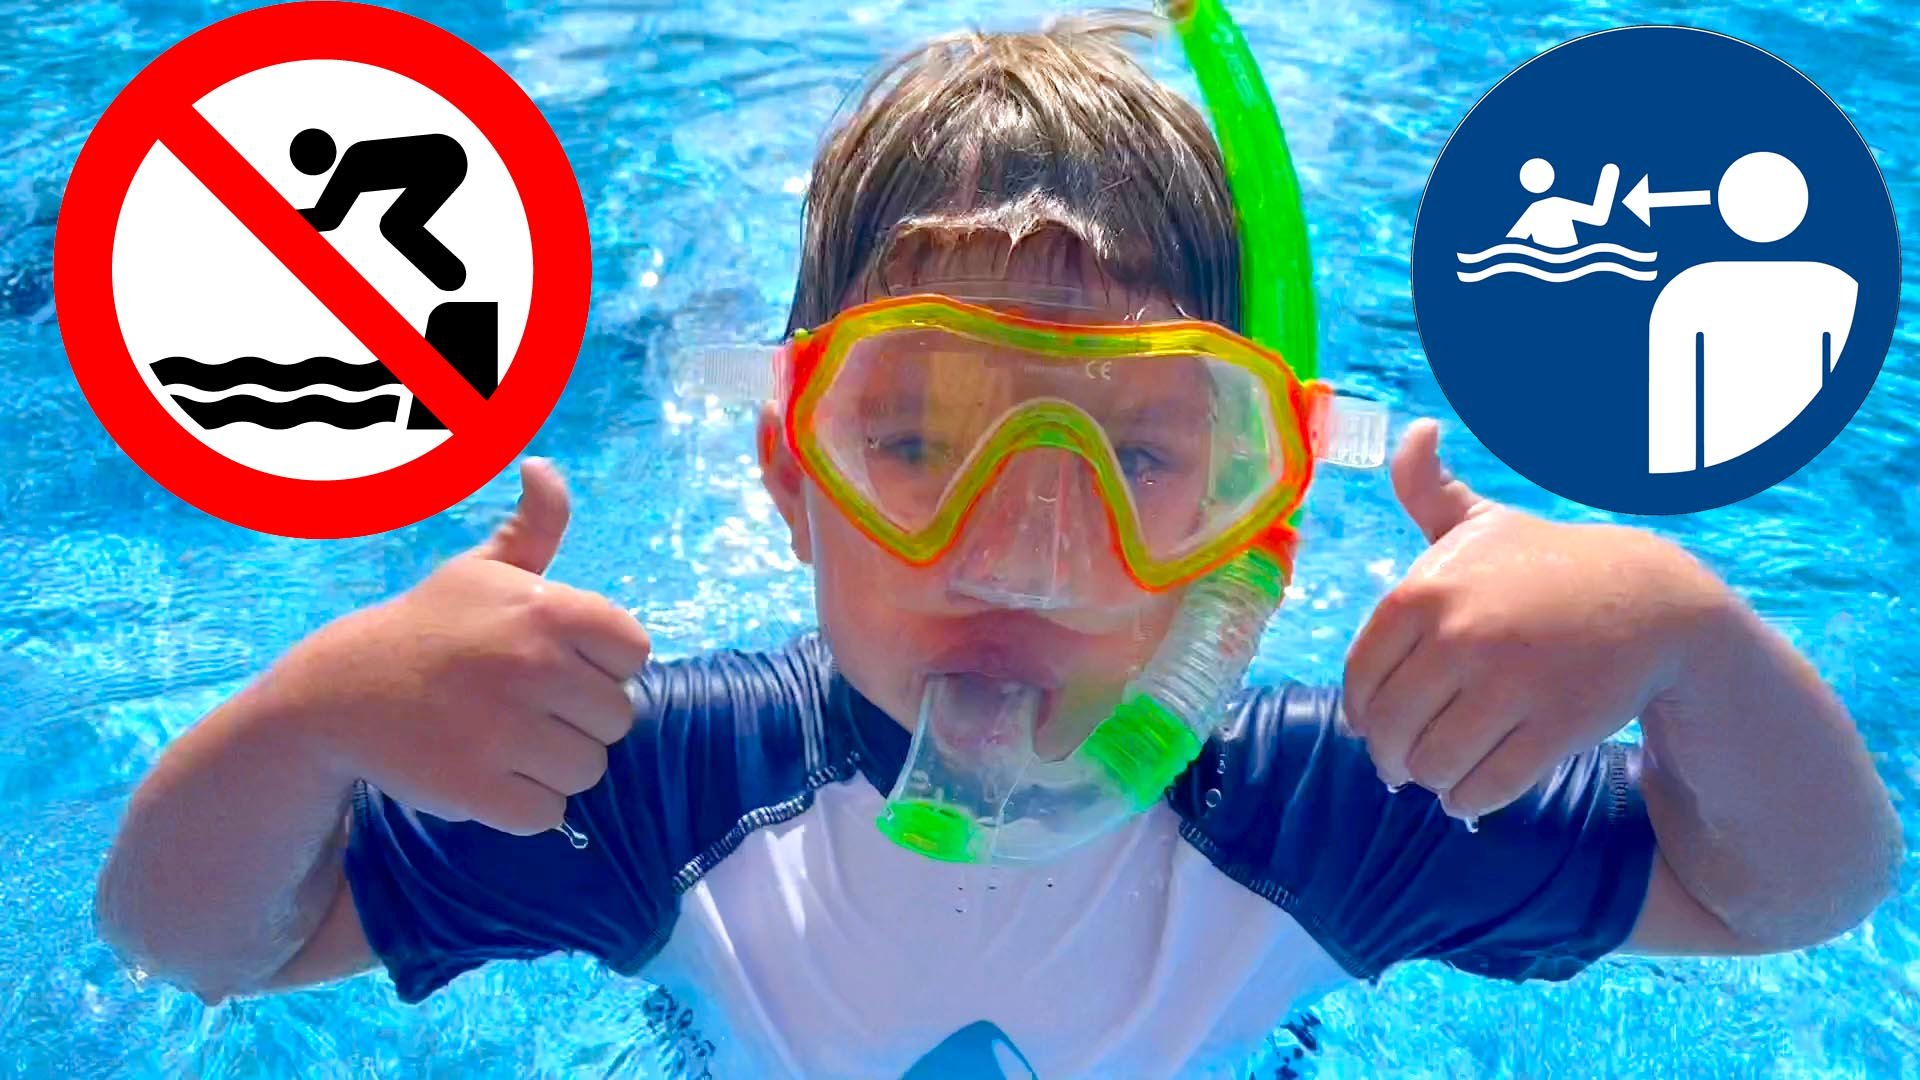 Обучающее видео для детей Брозаврики играют и показывают правила безопасности в бассейне